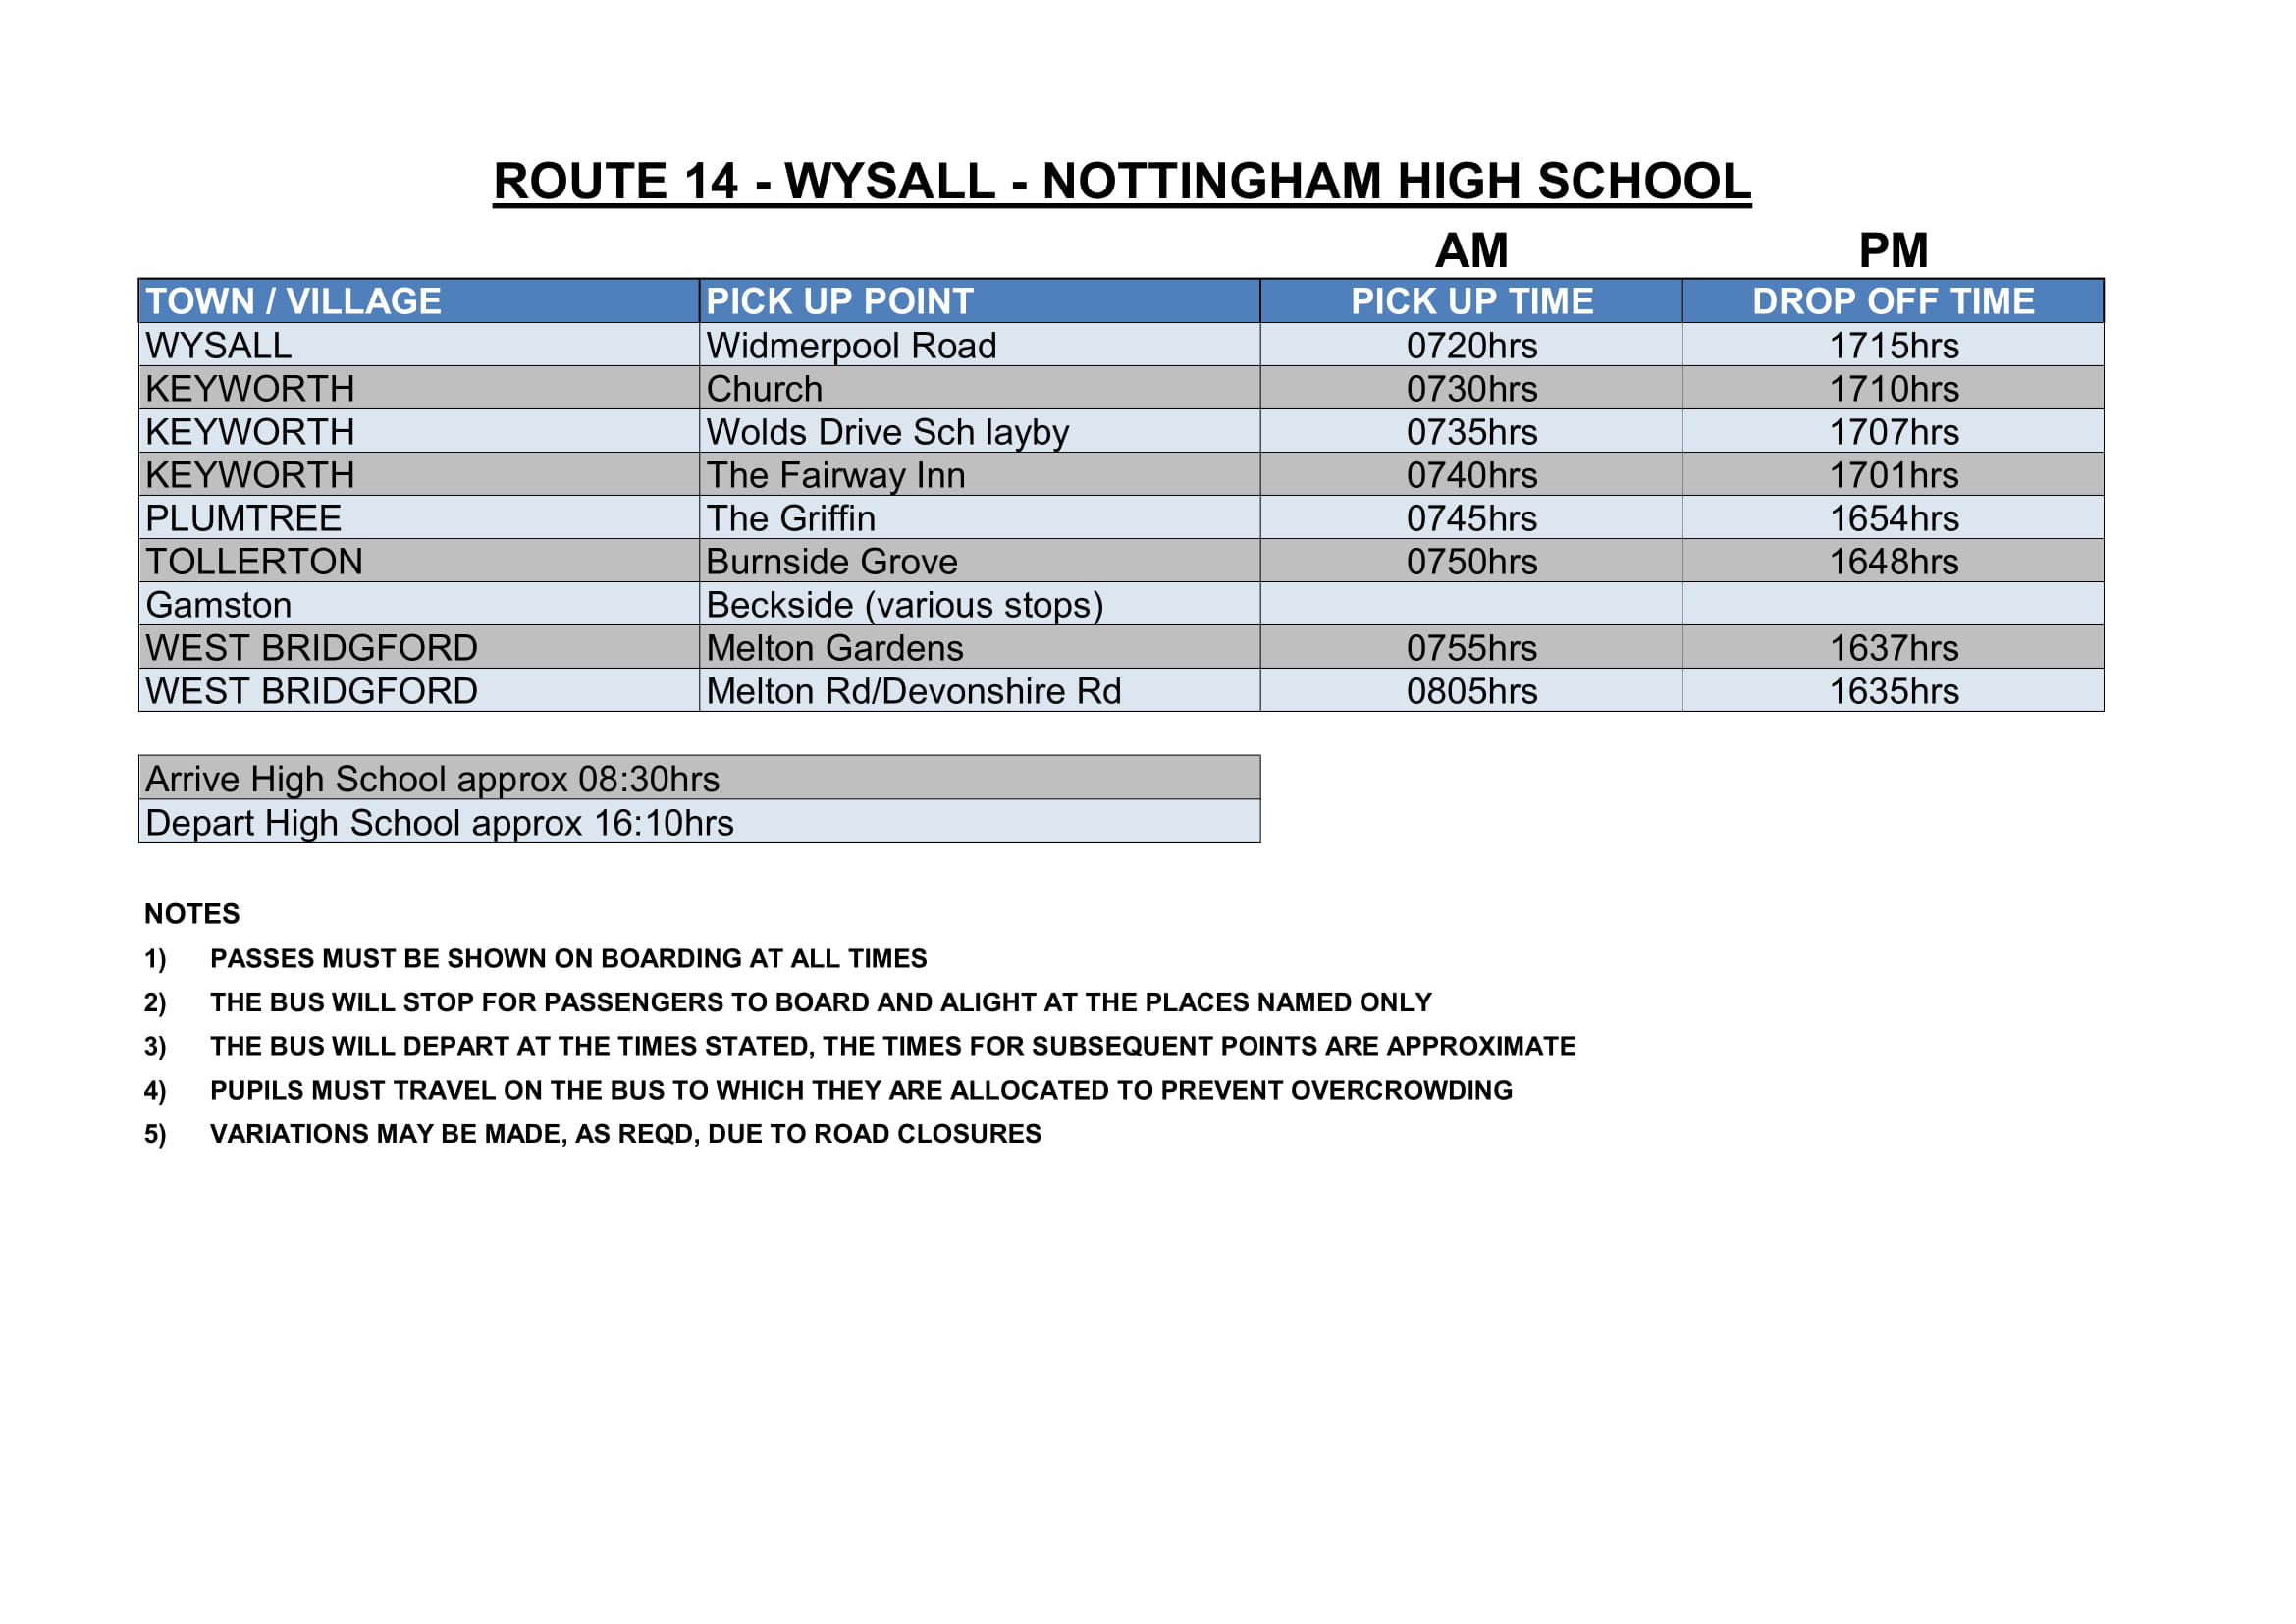 Sharpes of Nottingham Timetable